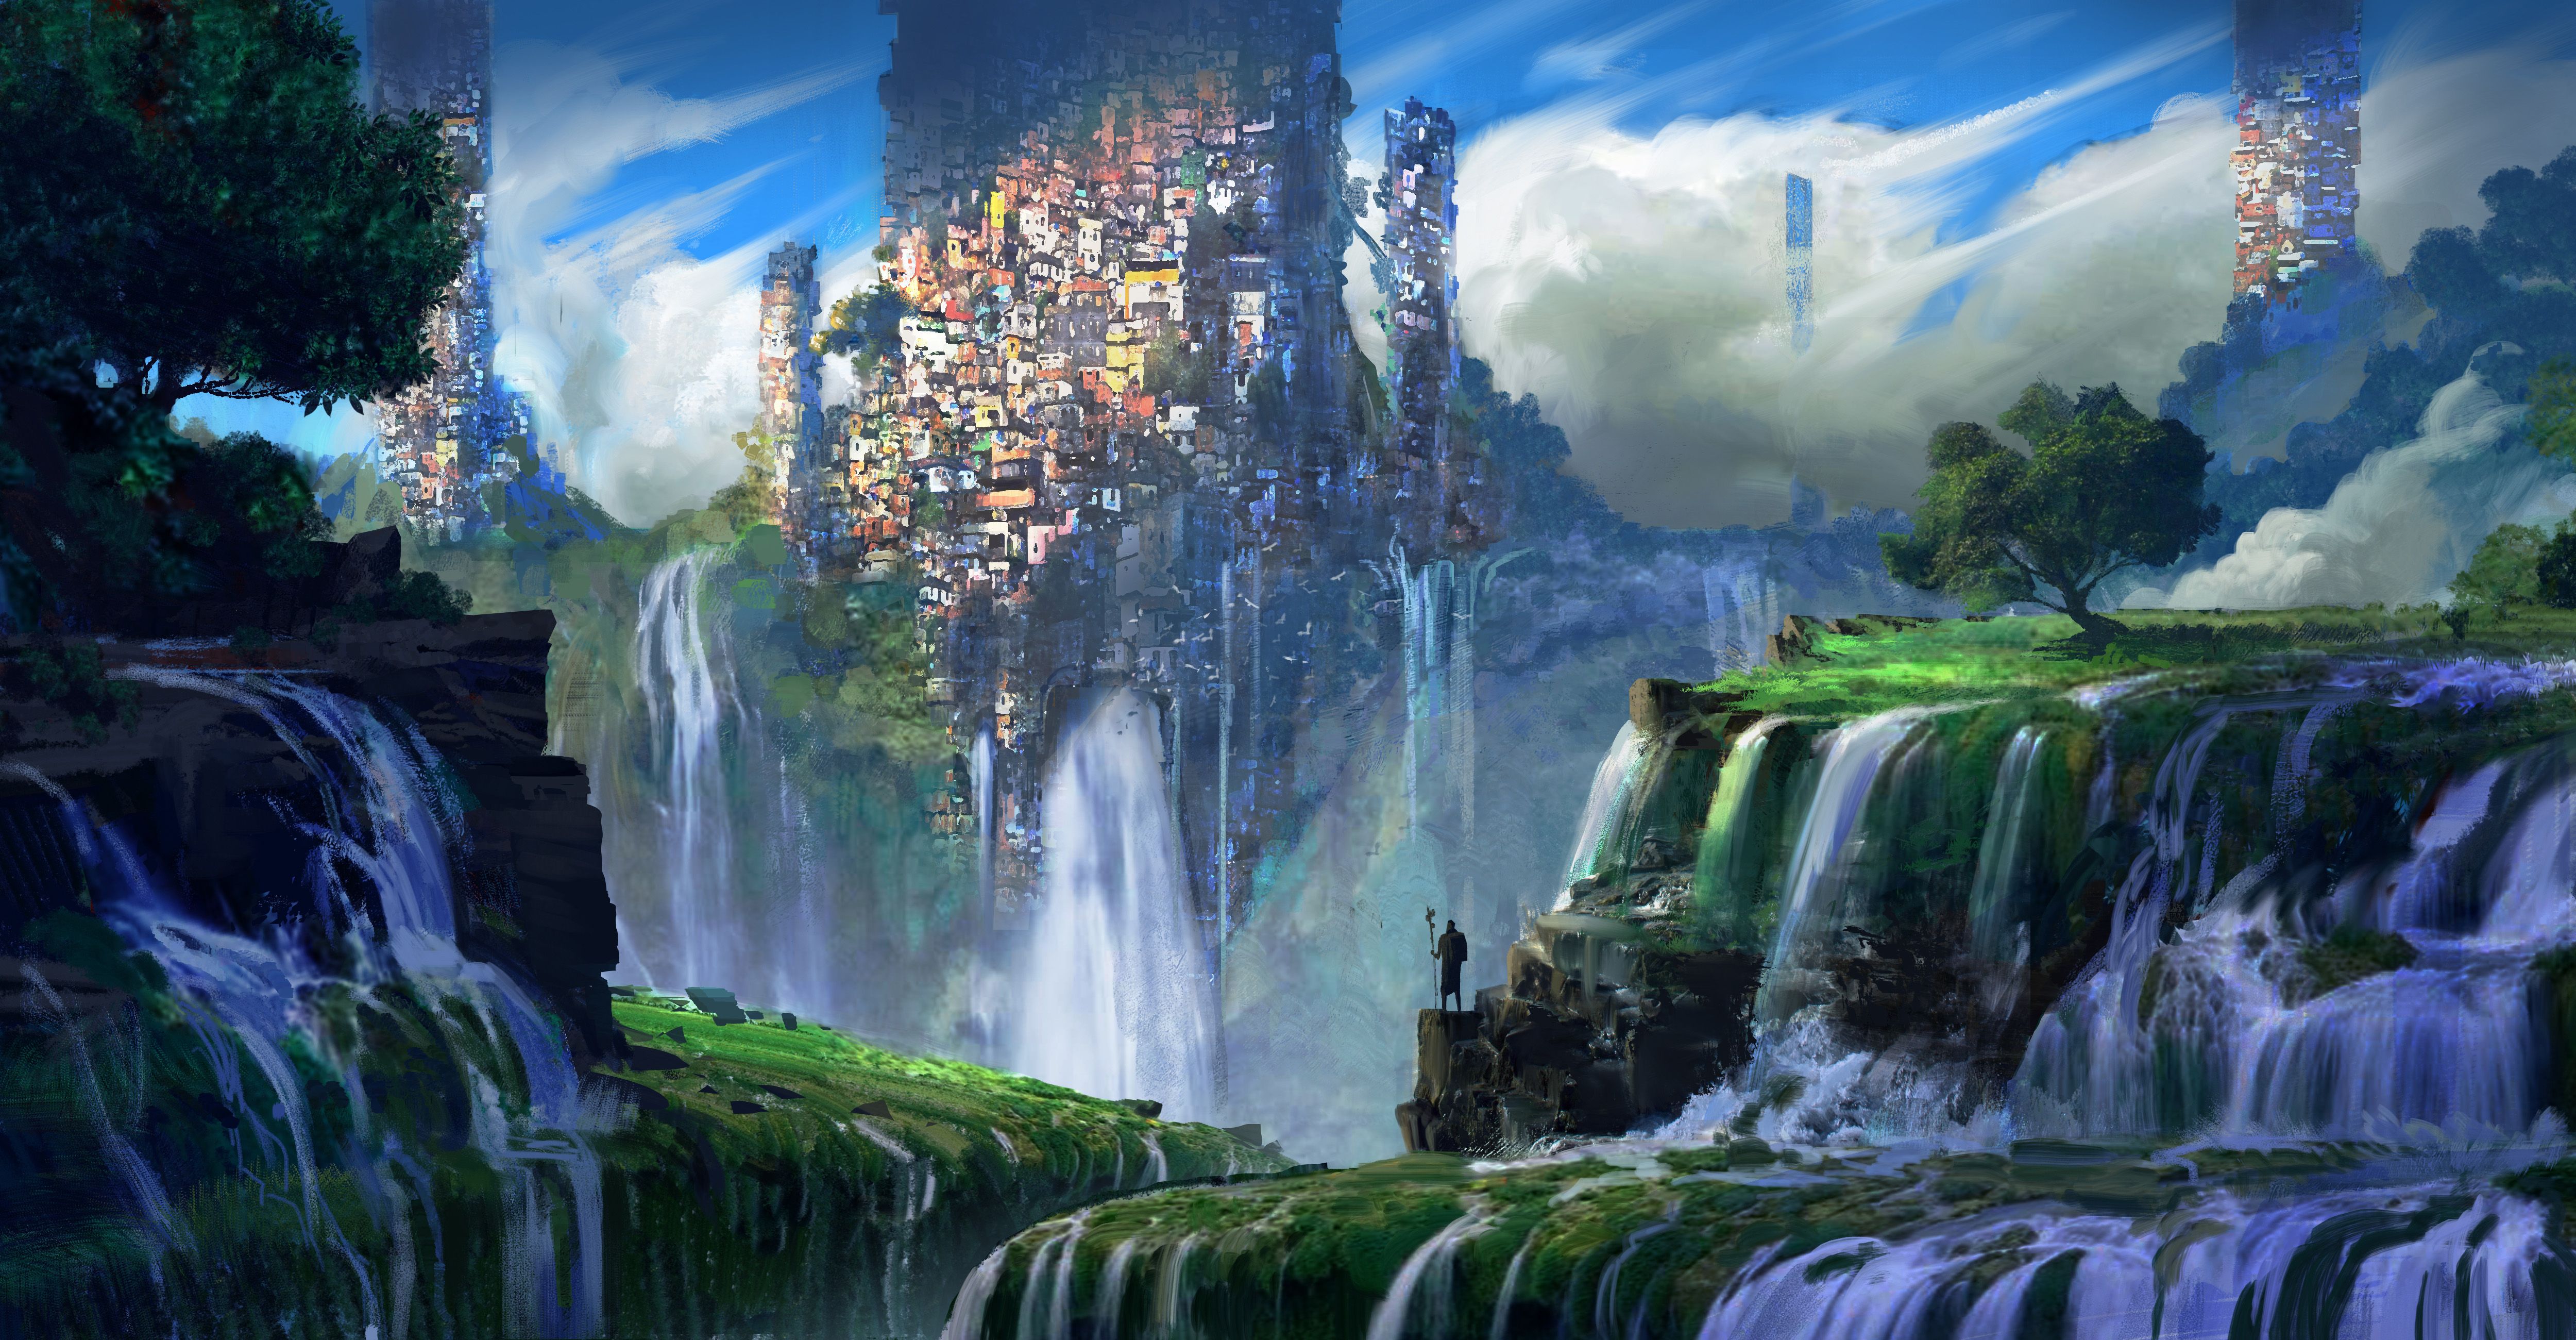 HD fantasy landscape wallpapers  Peakpx